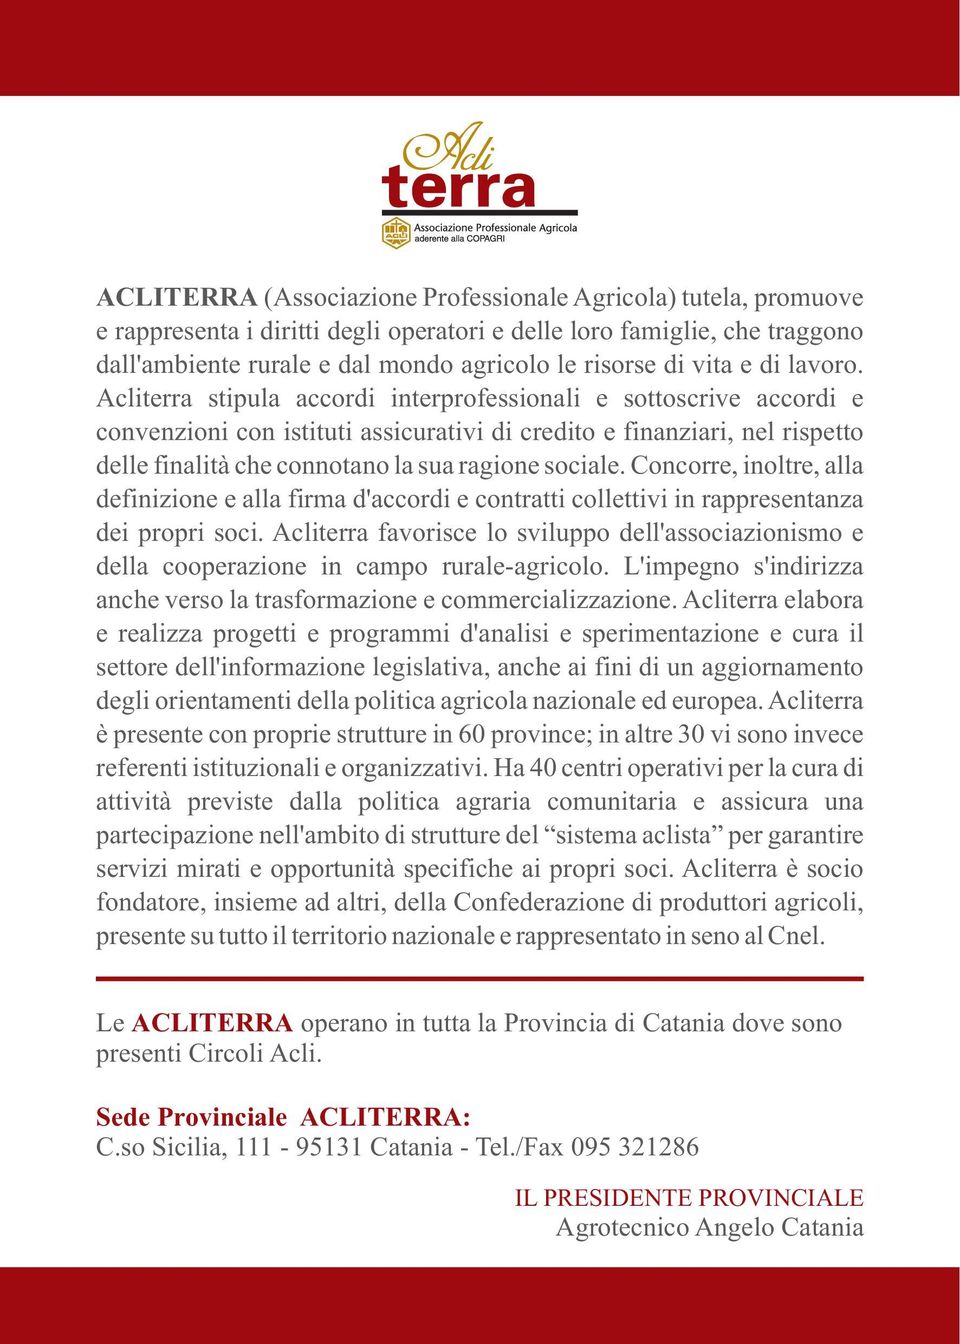 Acliterra stipula accordi interprofessionali e sottoscrive accordi e convenzioni con istituti assicurativi di credito e finanziari, nel rispetto delle finalità che connotano la sua ragione sociale.